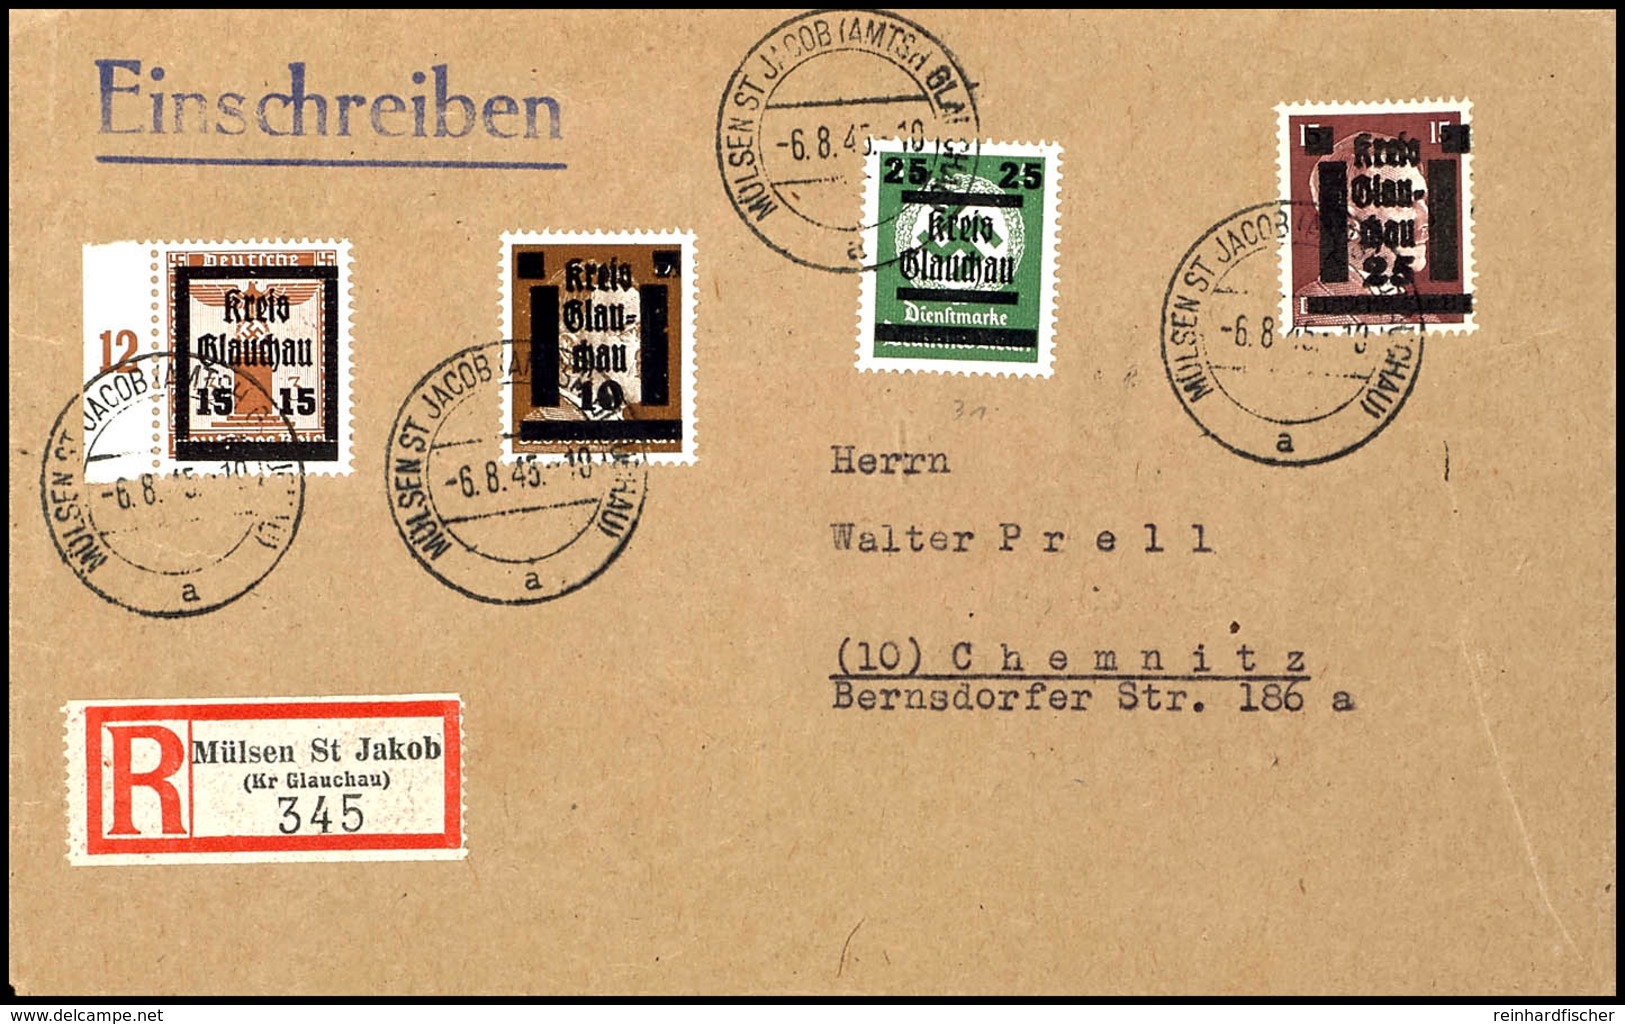 15 Auf 3 Pfg Parteidienstmarke Mit Bunter Zufrankatur Auf Portogerechtem R-Brief Von "MÜLSEN ST JACOB (AMTSH GLAUCHAU) 6 - Glauchau